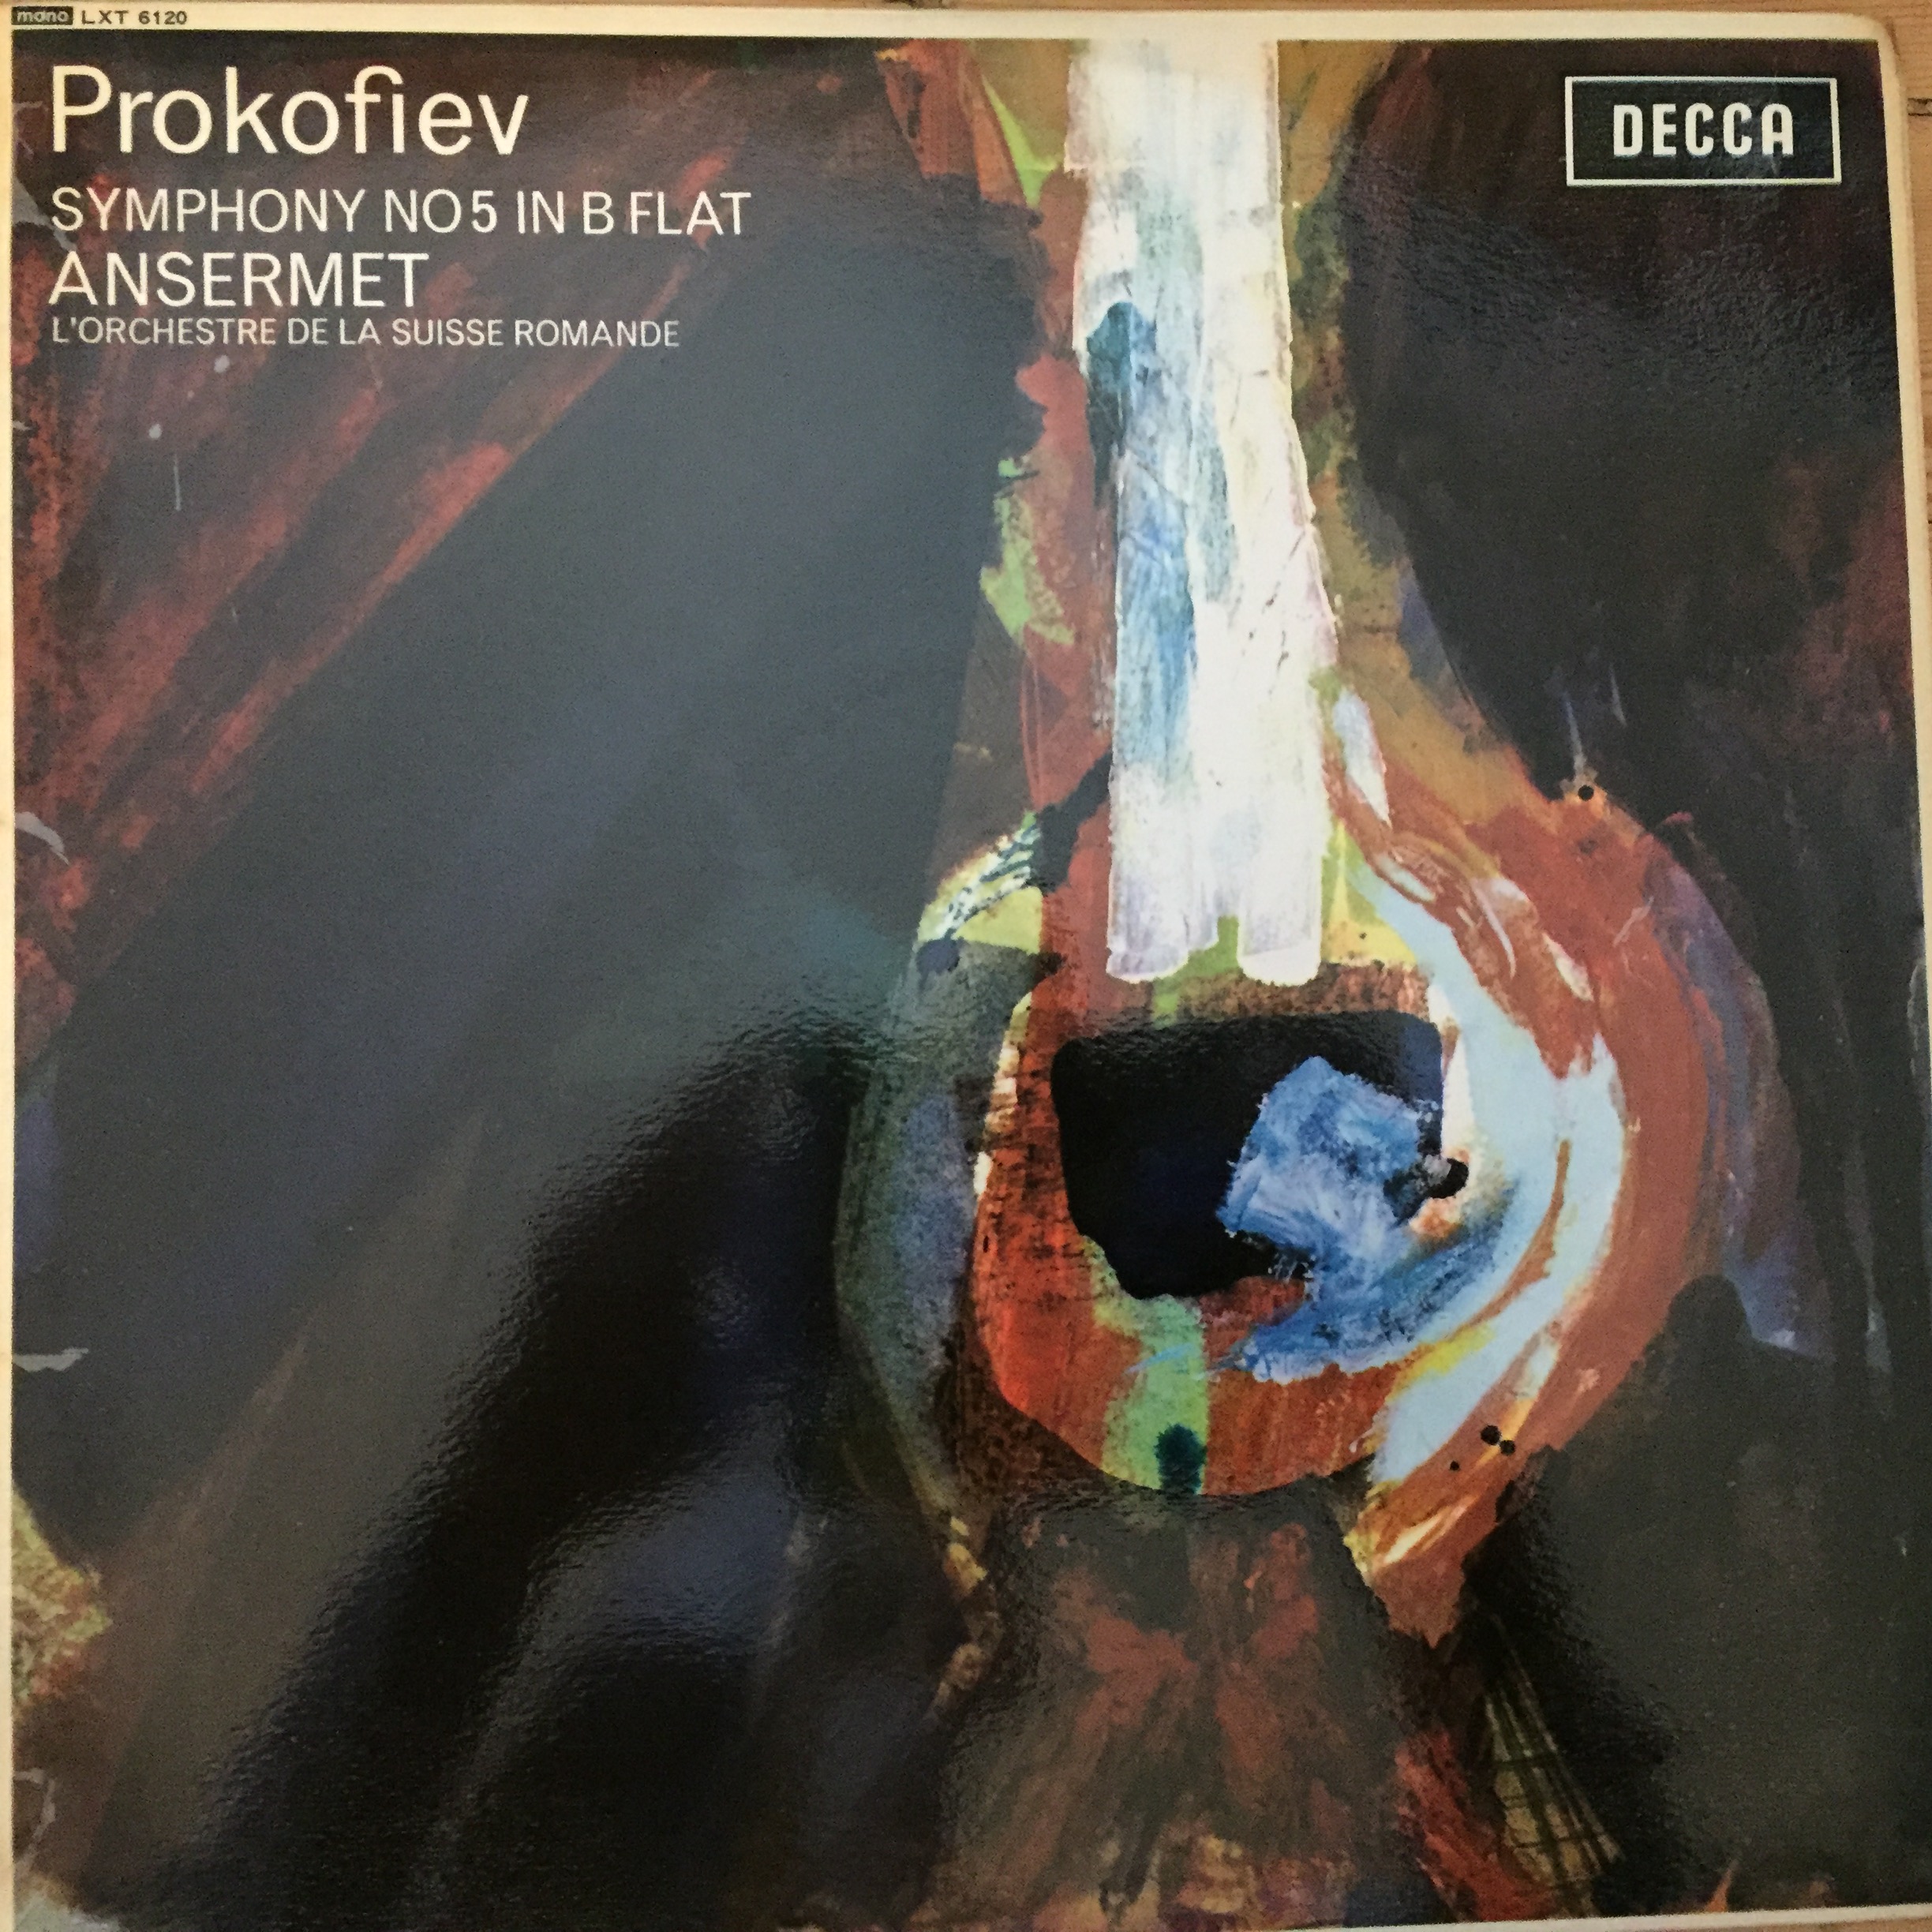 SXL 6120 Prokofiev Symphony No. 5 / Ansermet